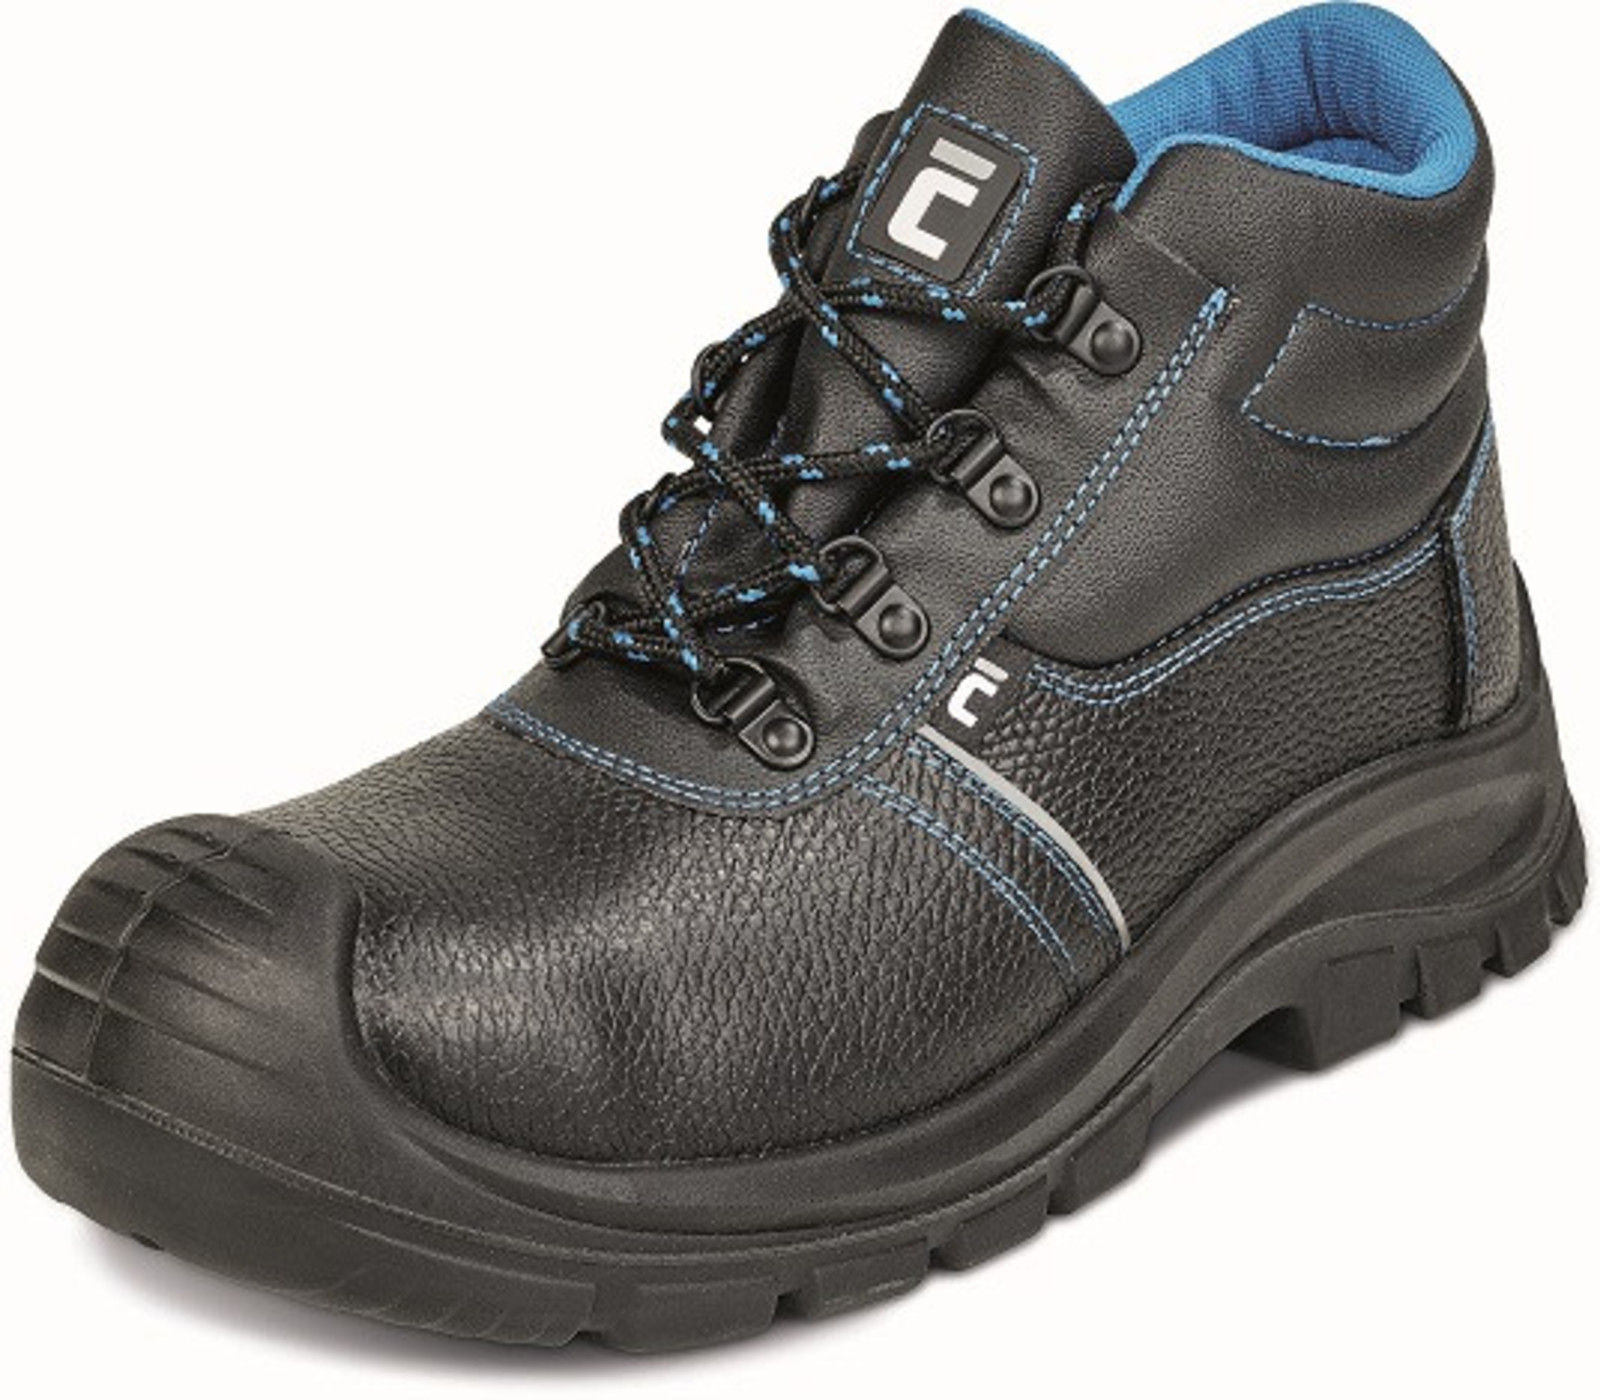 Bezpečnostná obuv Raven XT S1P - veľkosť: 47, farba: čierna